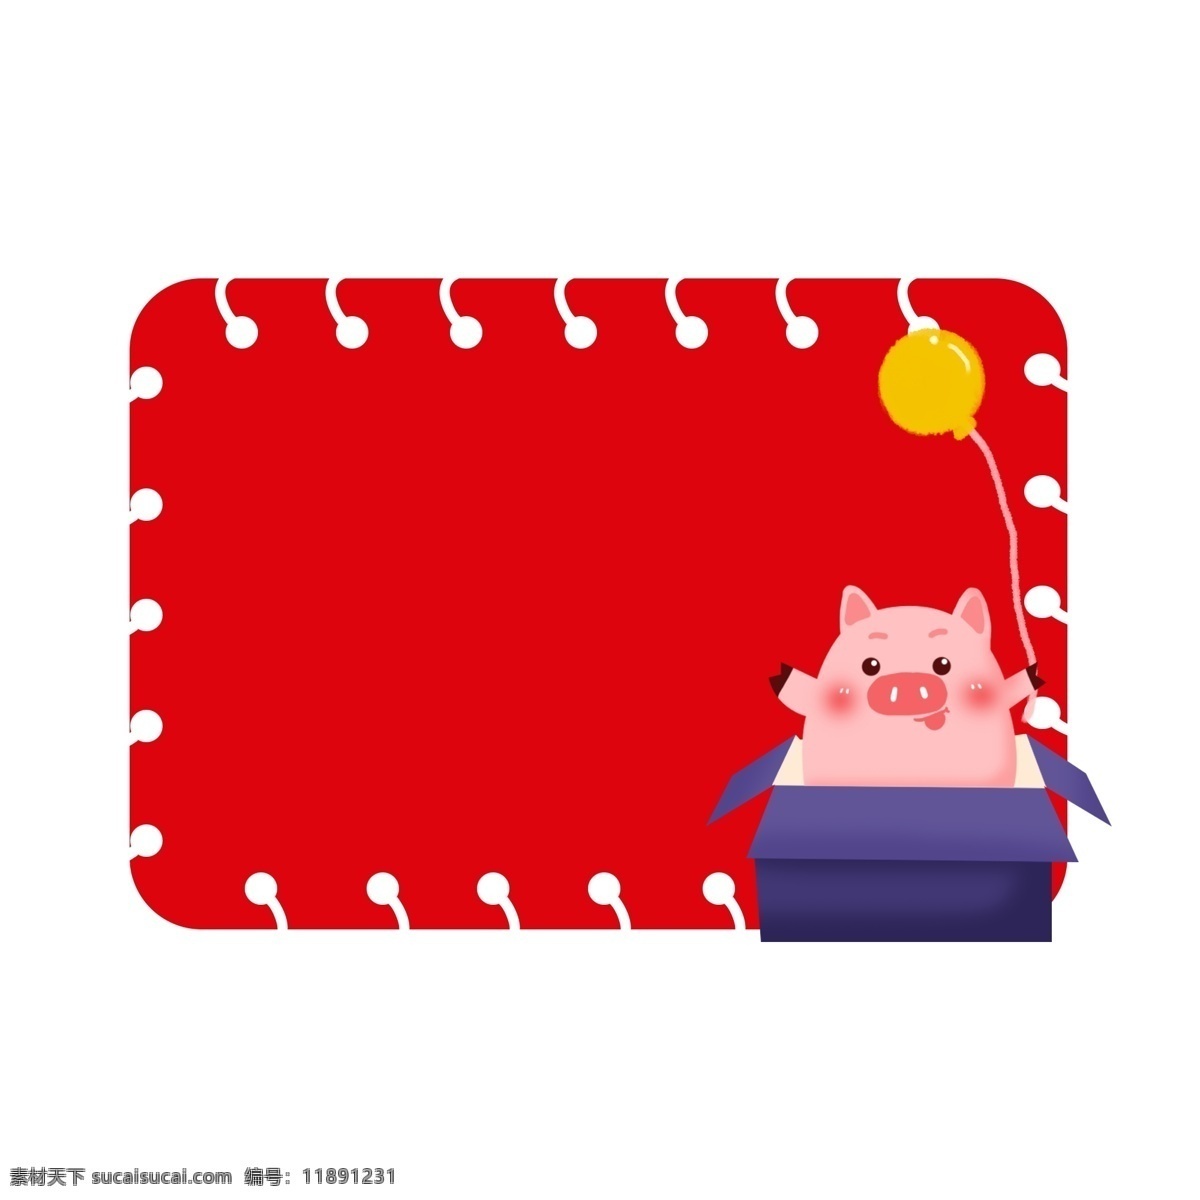 猪年 精美 边框 卡通 新年 新春 新禧 春节 灯笼 烟雾 精致 红色 猪年边框 矢量相册 图案猪年 免扣边框